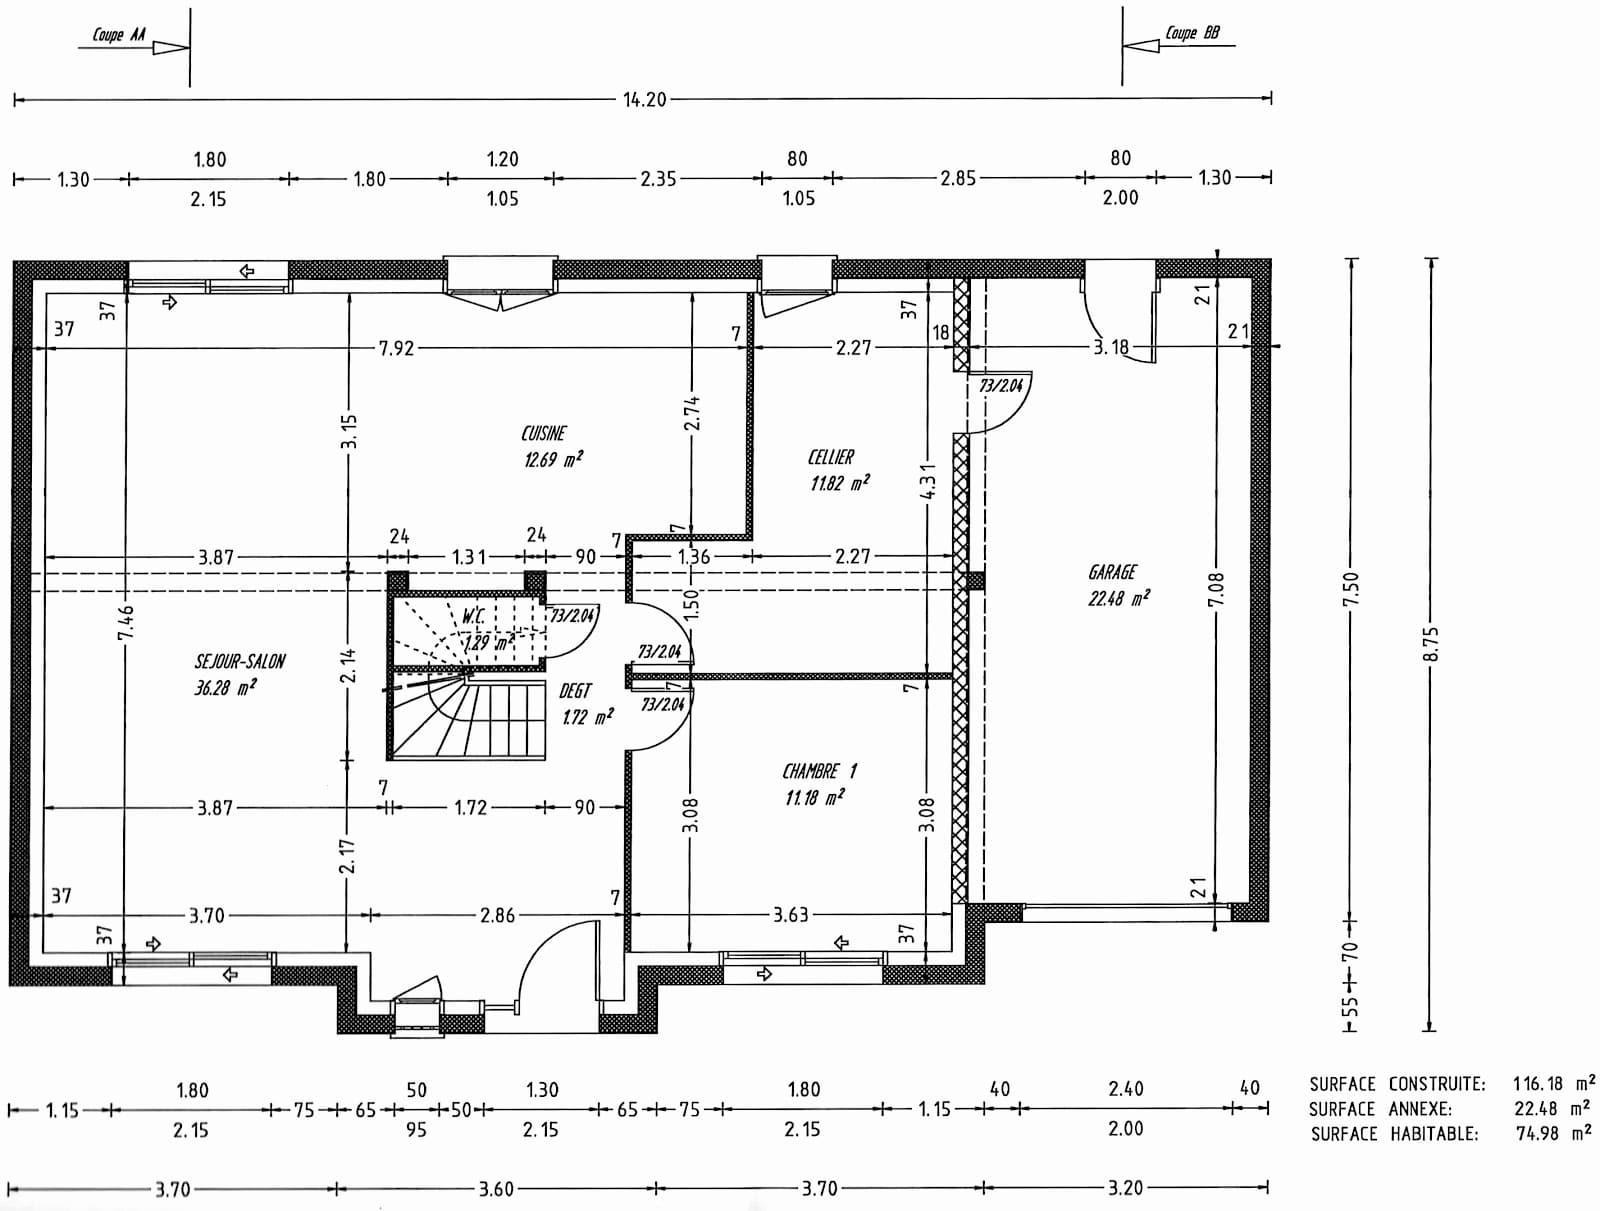 Plan de maison rectangulaire plain pied 3 chambres